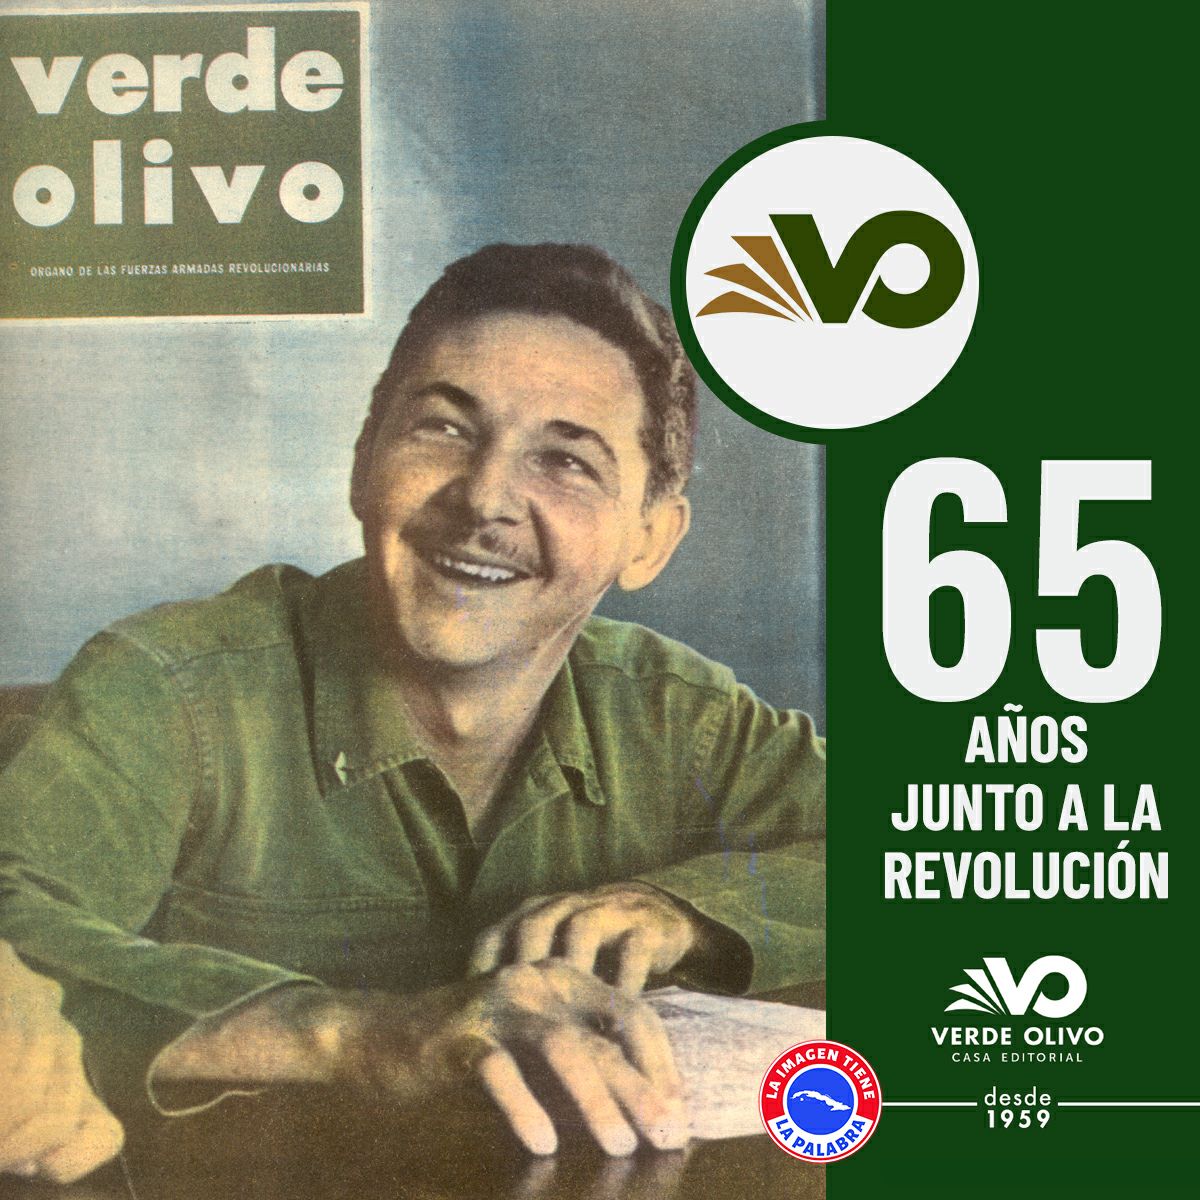 Muchas felicidades a la Revista Editorial Verde Olivo 'Verde Olivo' en su 65 Aniversario. #CubaViveEnSuHistoria #ArtemisaJuntosSomosMás #ValoresTeam